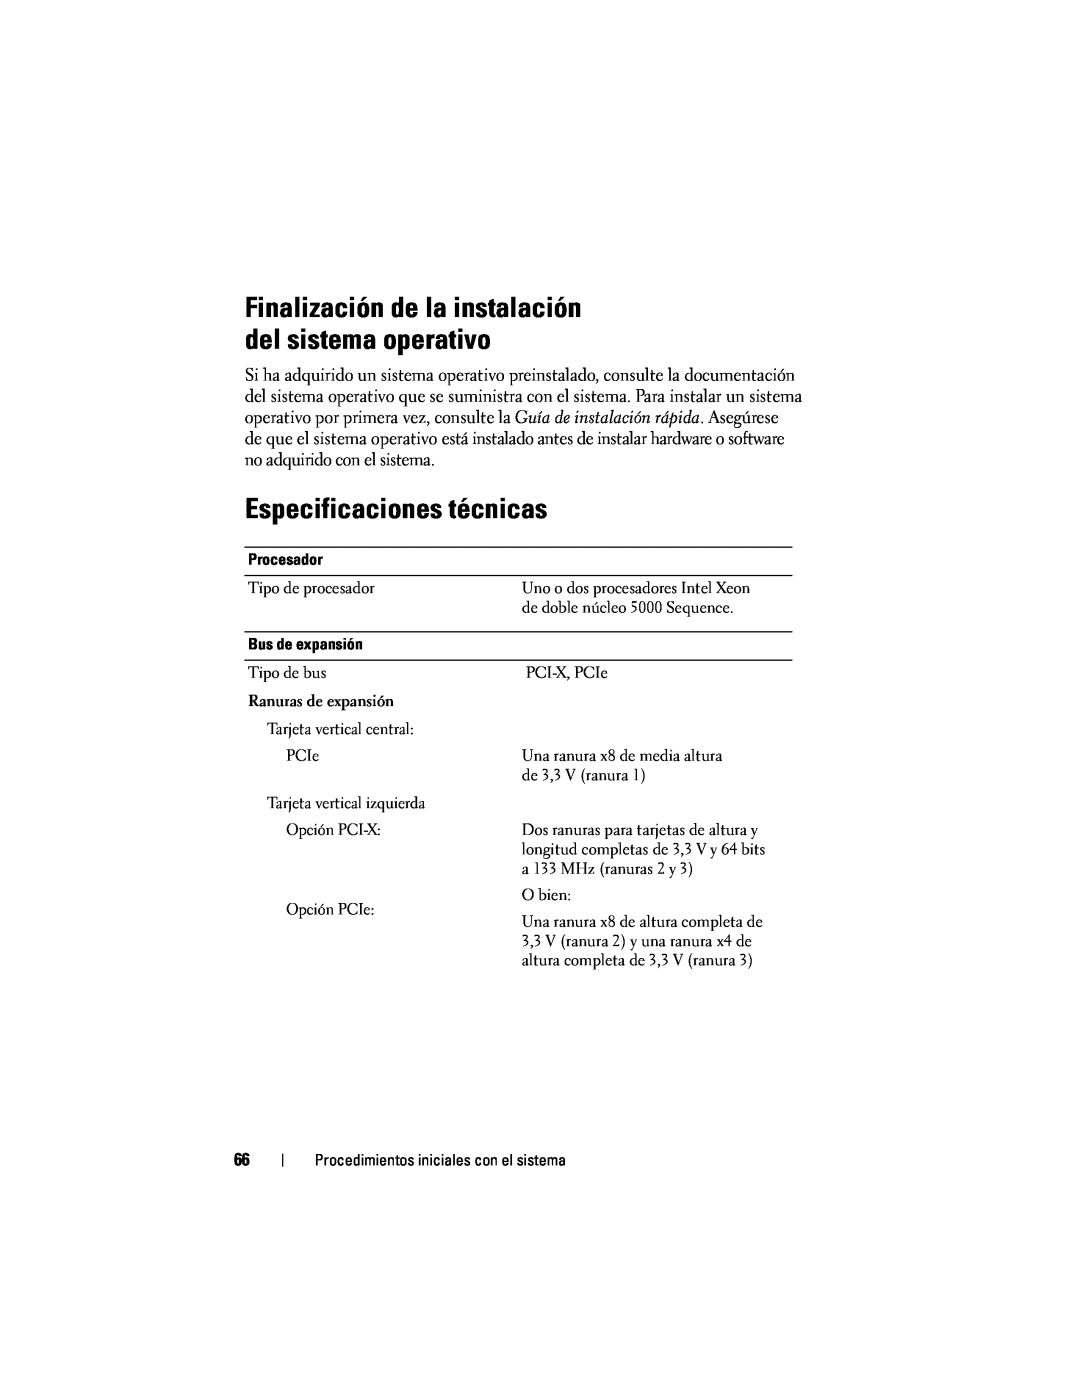 Dell EMS01, YX154 manual Especificaciones técnicas, Finalización de la instalación del sistema operativo 